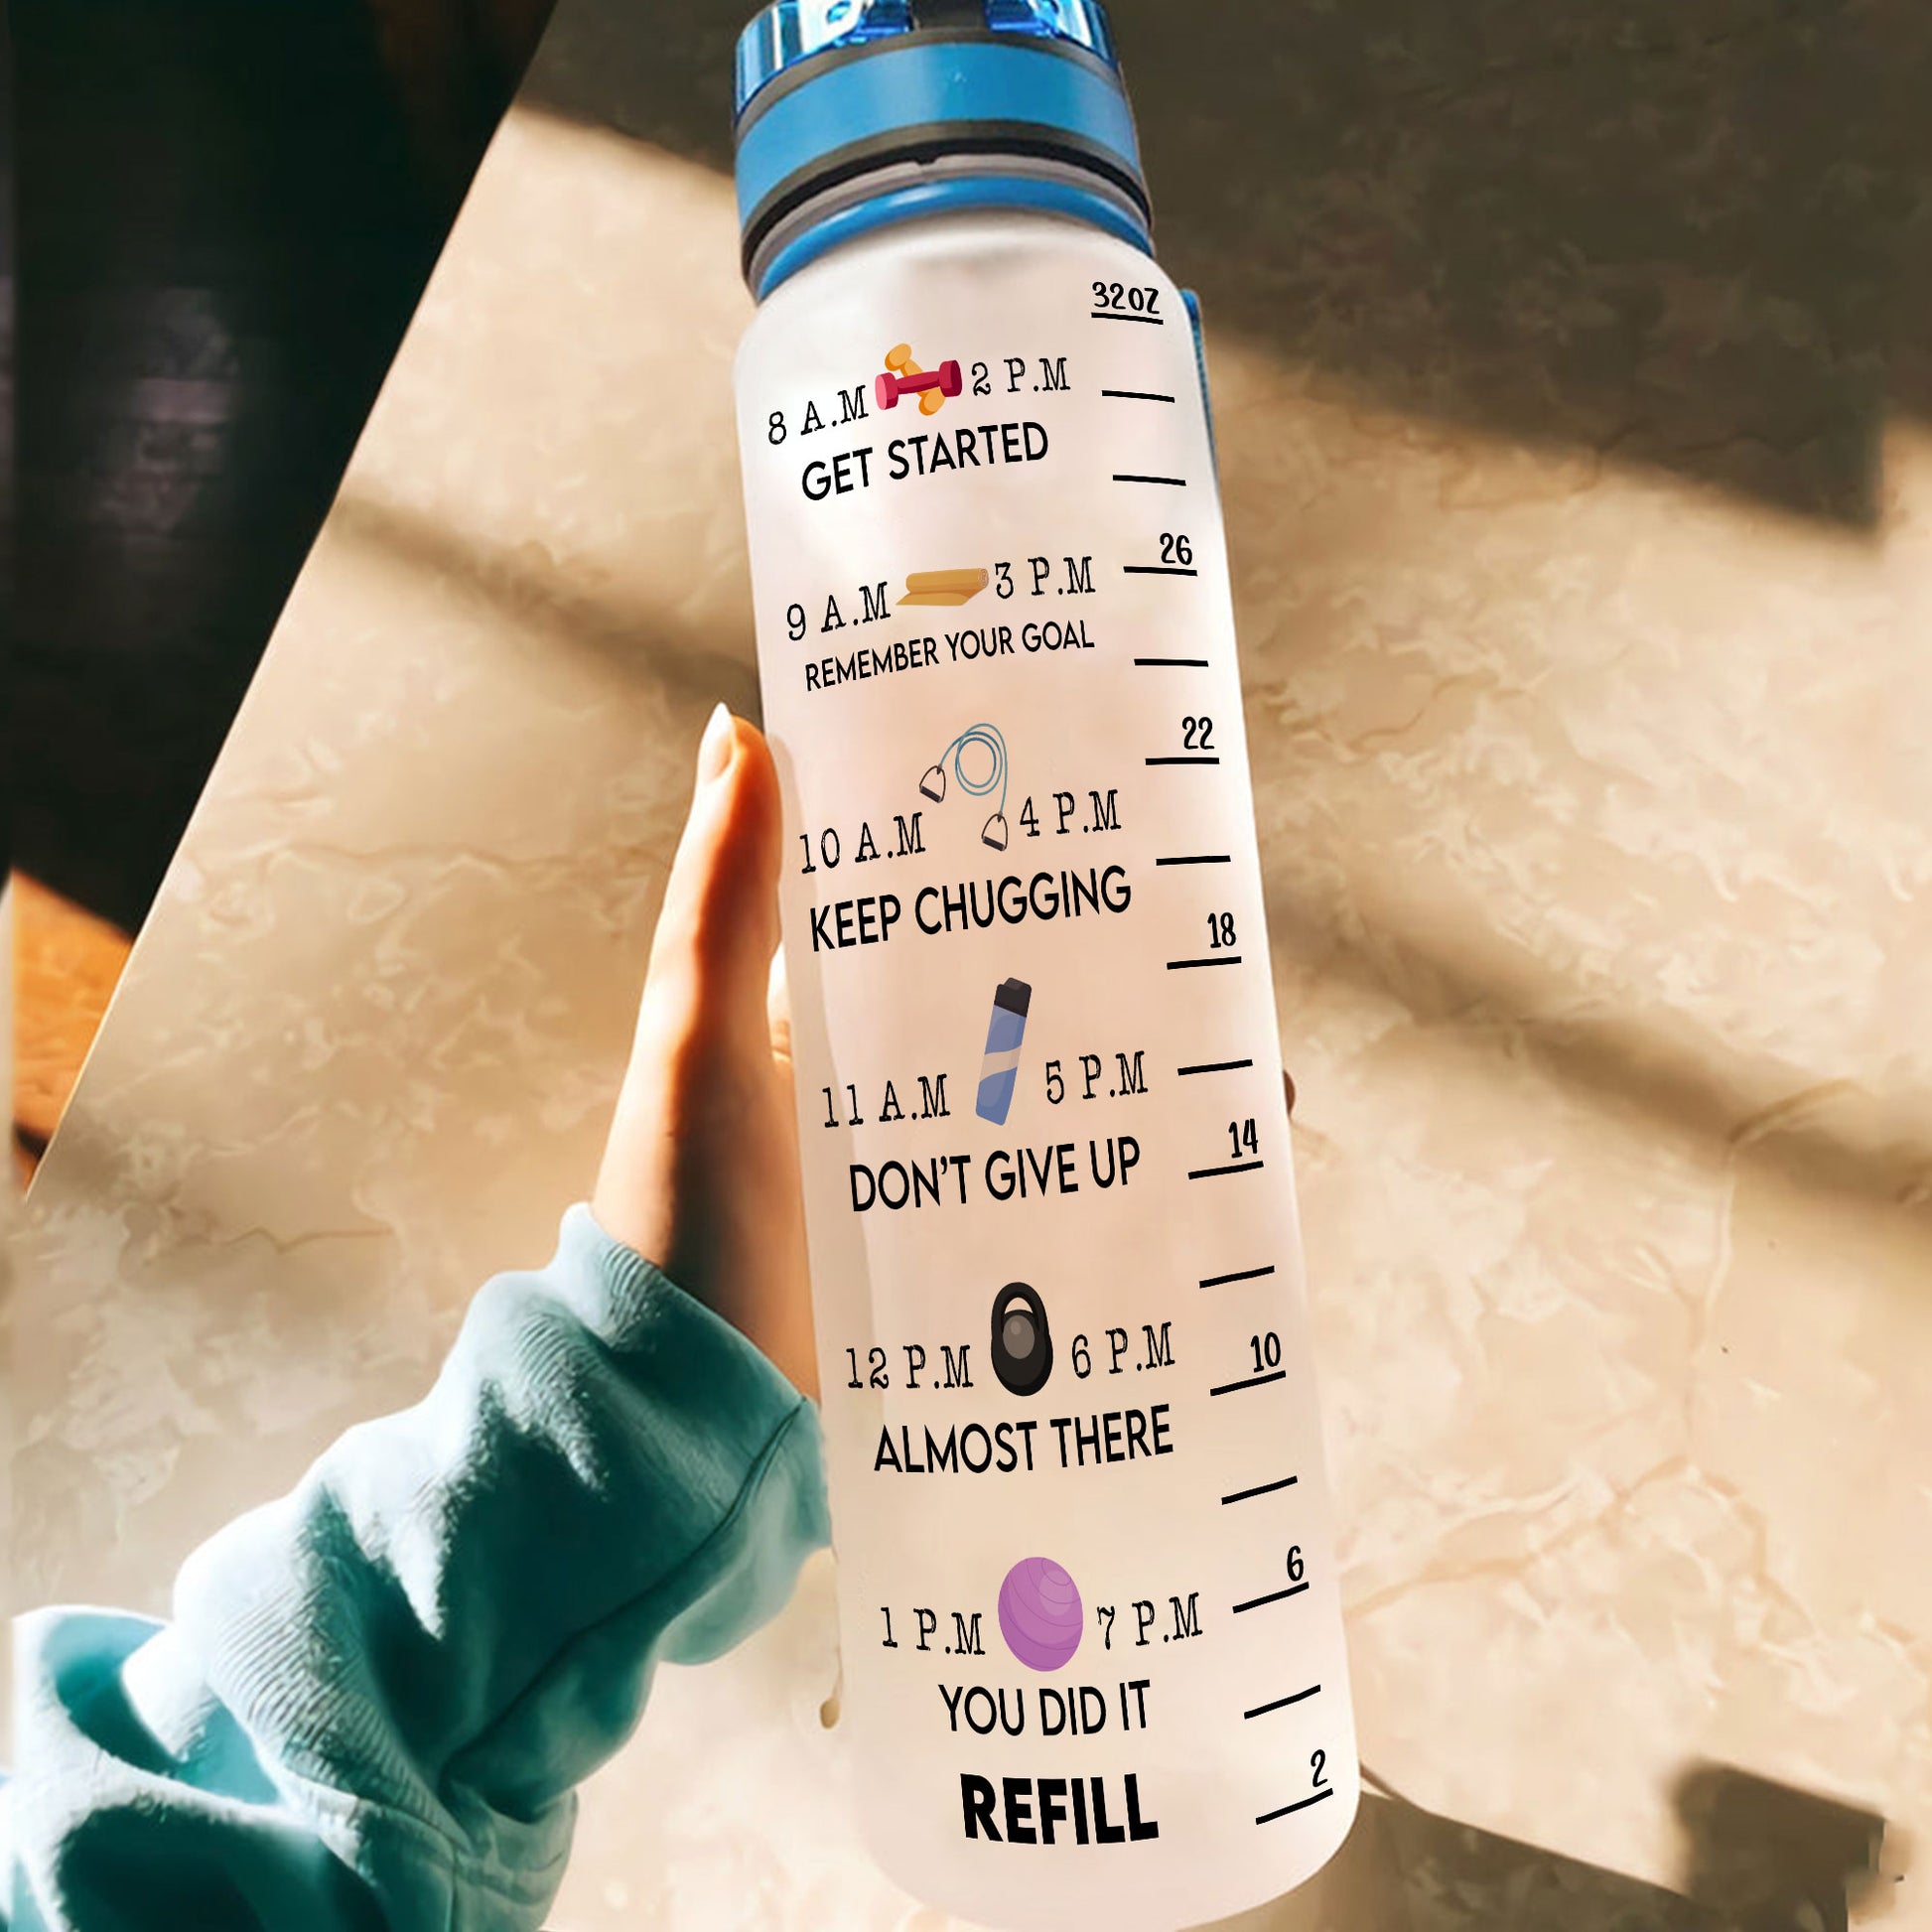 Custom Harry Potter Wizard Girl Water Tracker Bottle - Jolly